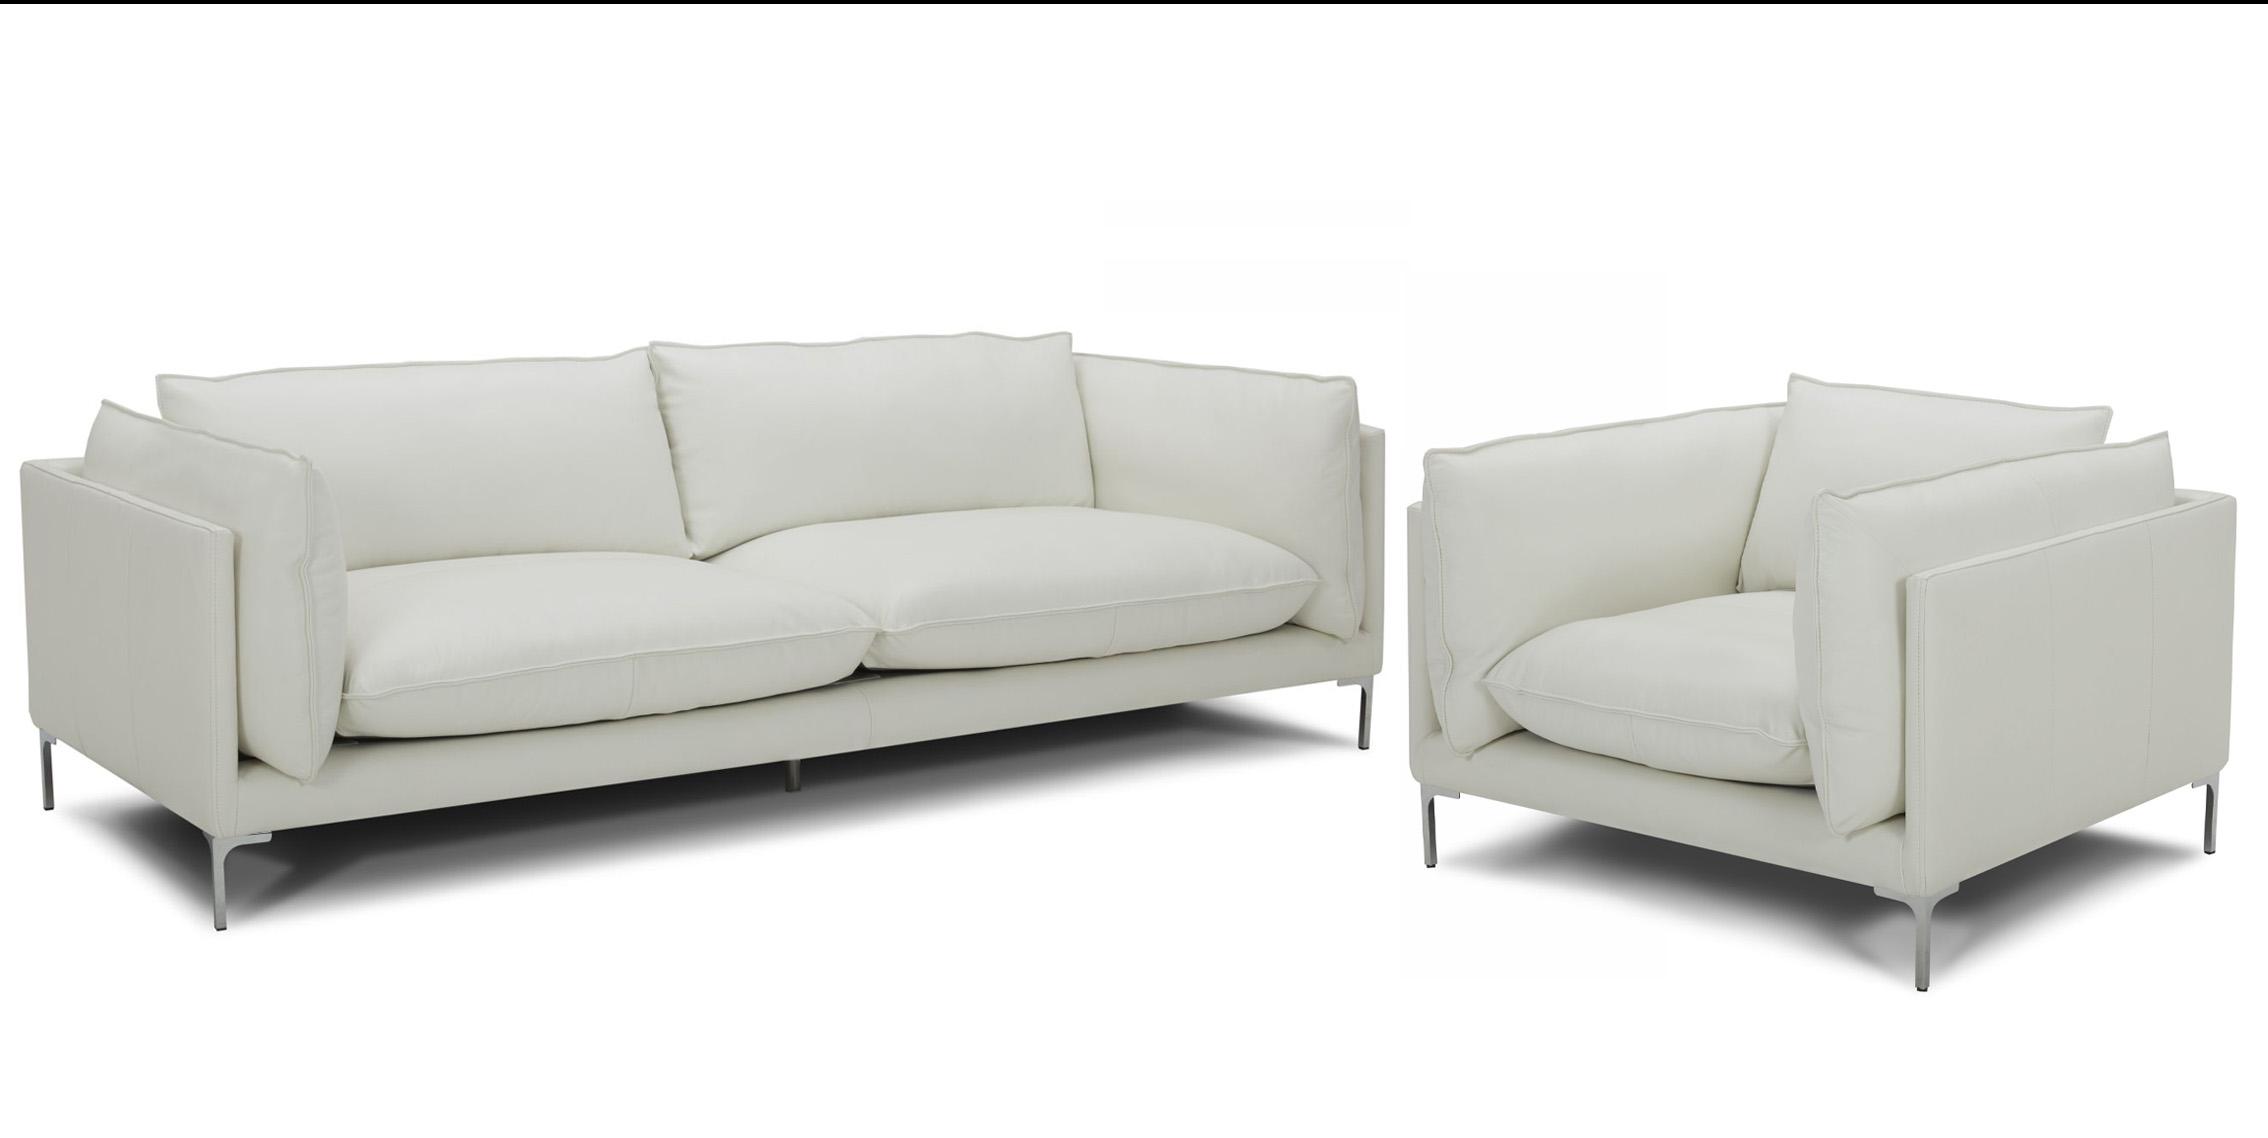 Contemporary, Modern Sofa Set VGKKKF2627-L2927-SOFA-Set-2 VGKKKF2627-L2927-SOFA-Set-2 in White Full Leather